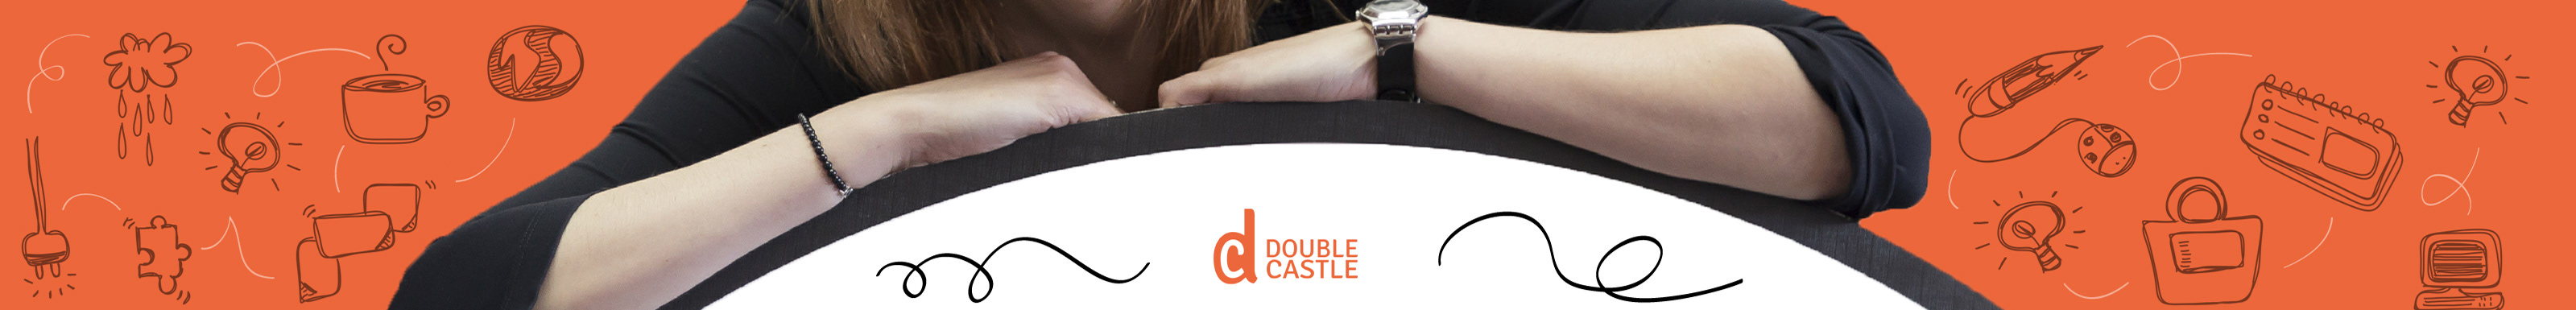 Double Castle 的个人资料横幅